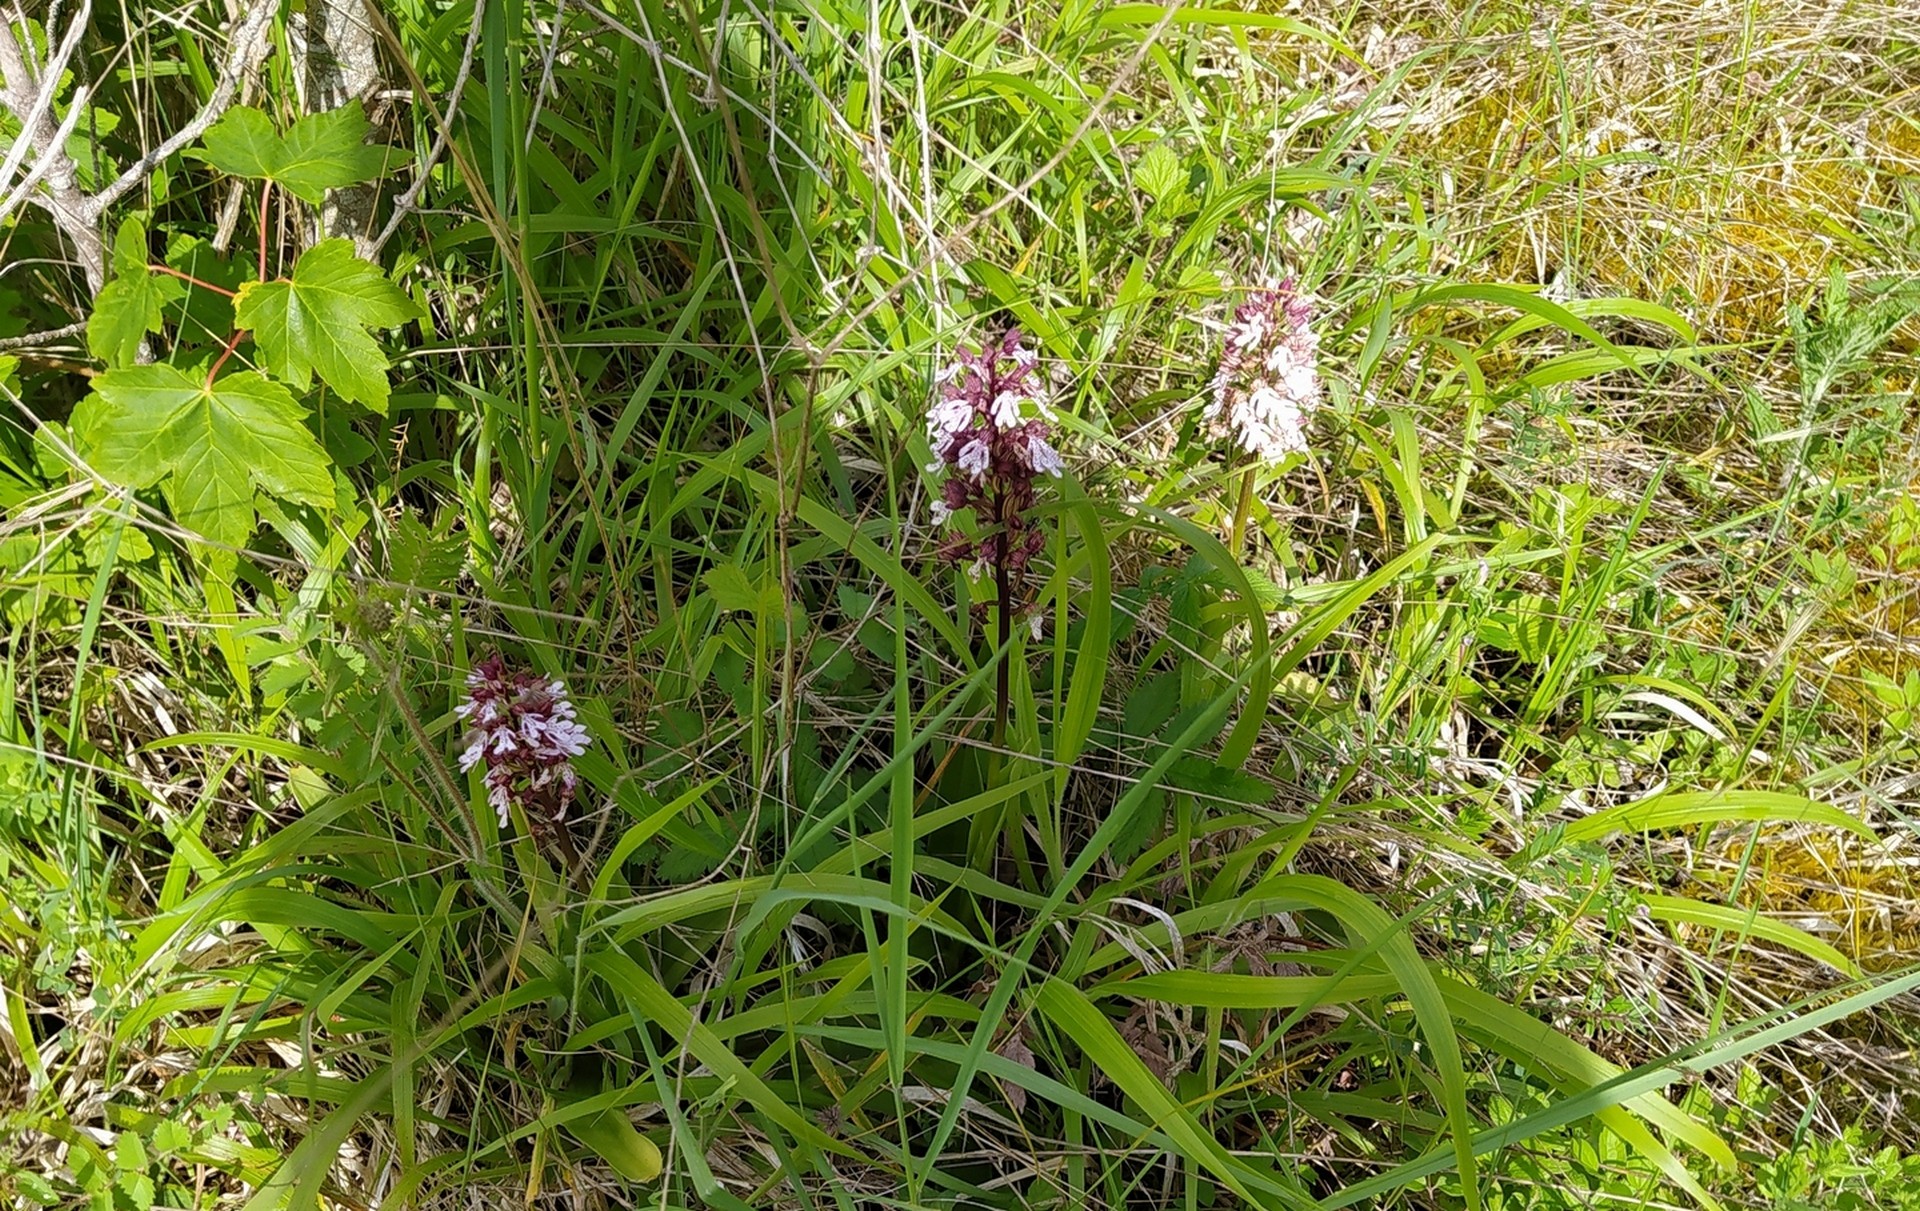 Orchidées pourpres abondantes dans la partie en herbe !